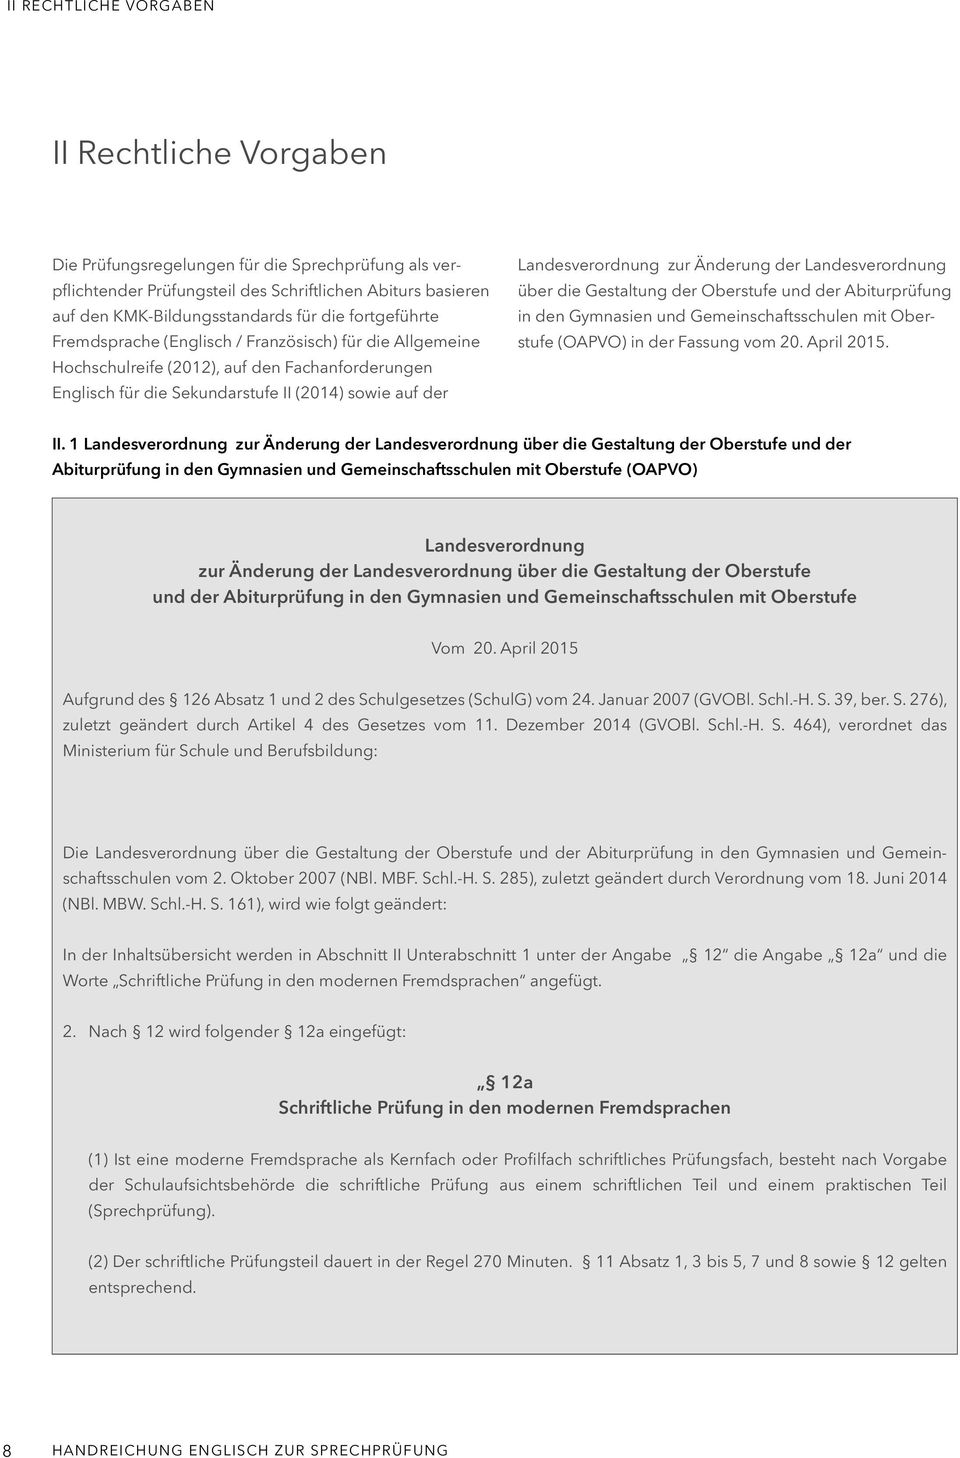 Änderung der Landesverordnung über die Gestaltung der Oberstufe und der Abiturprüfung in den Gymnasien und Gemeinschaftsschulen mit Oberstufe (OAPVO) in der Fassung vom 20. April 2015. II.